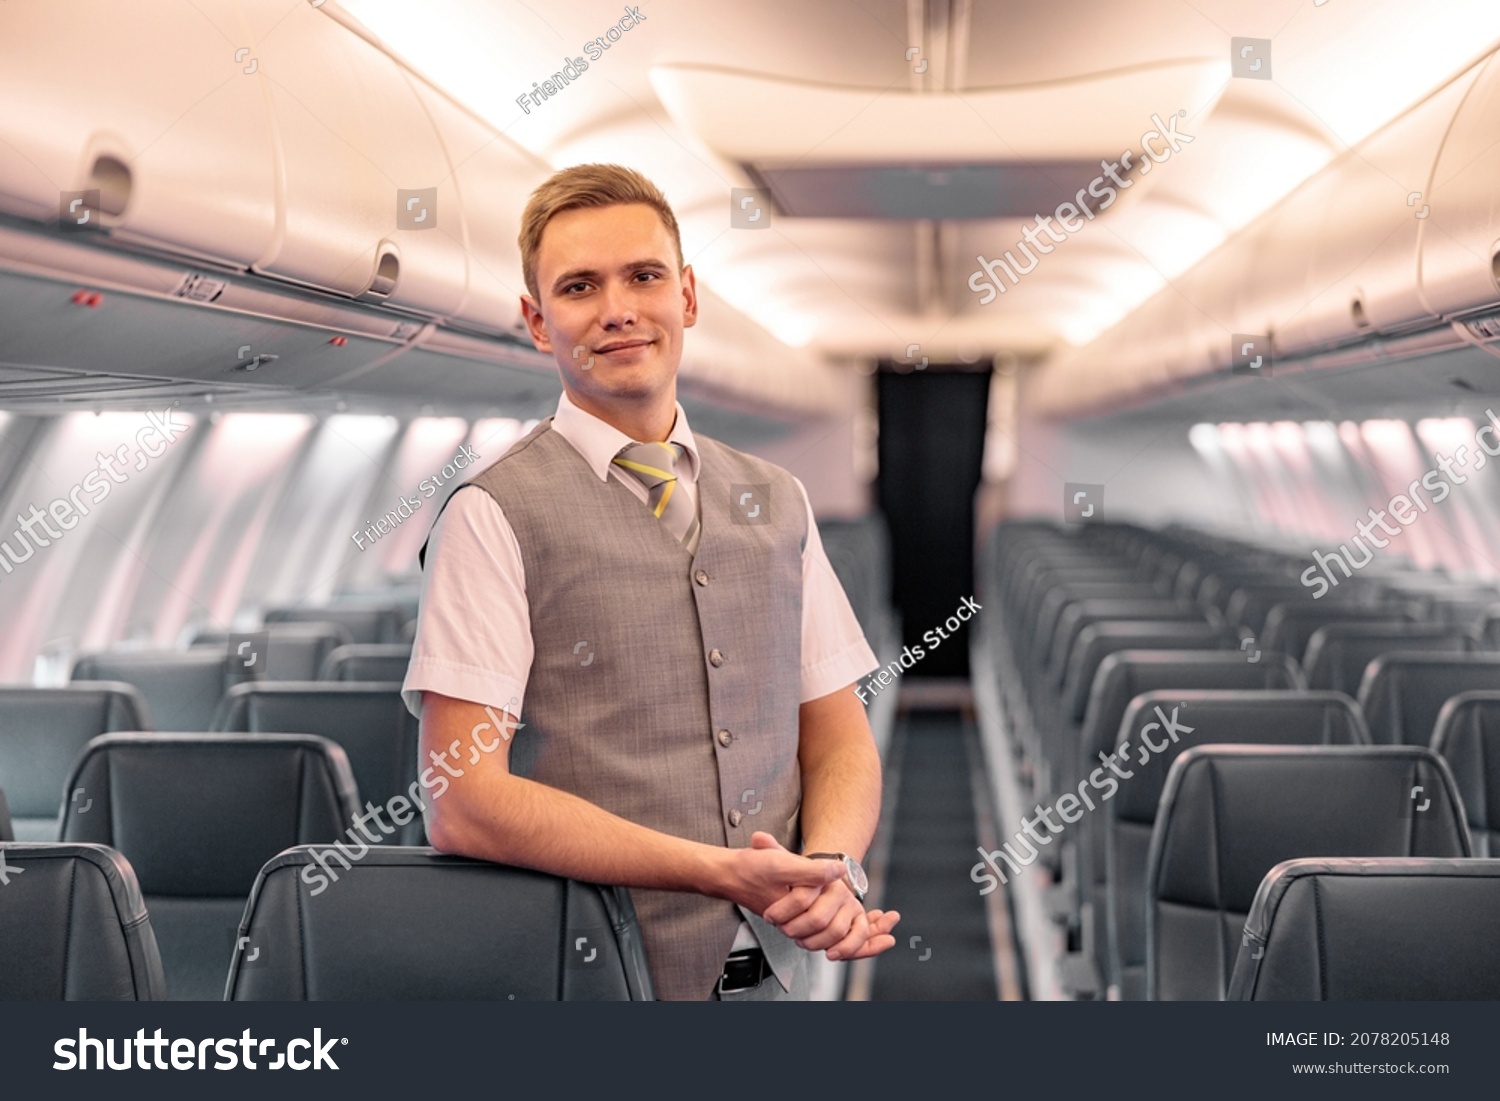 Male flight attendant standing in aircraft passenger salon #2078205148